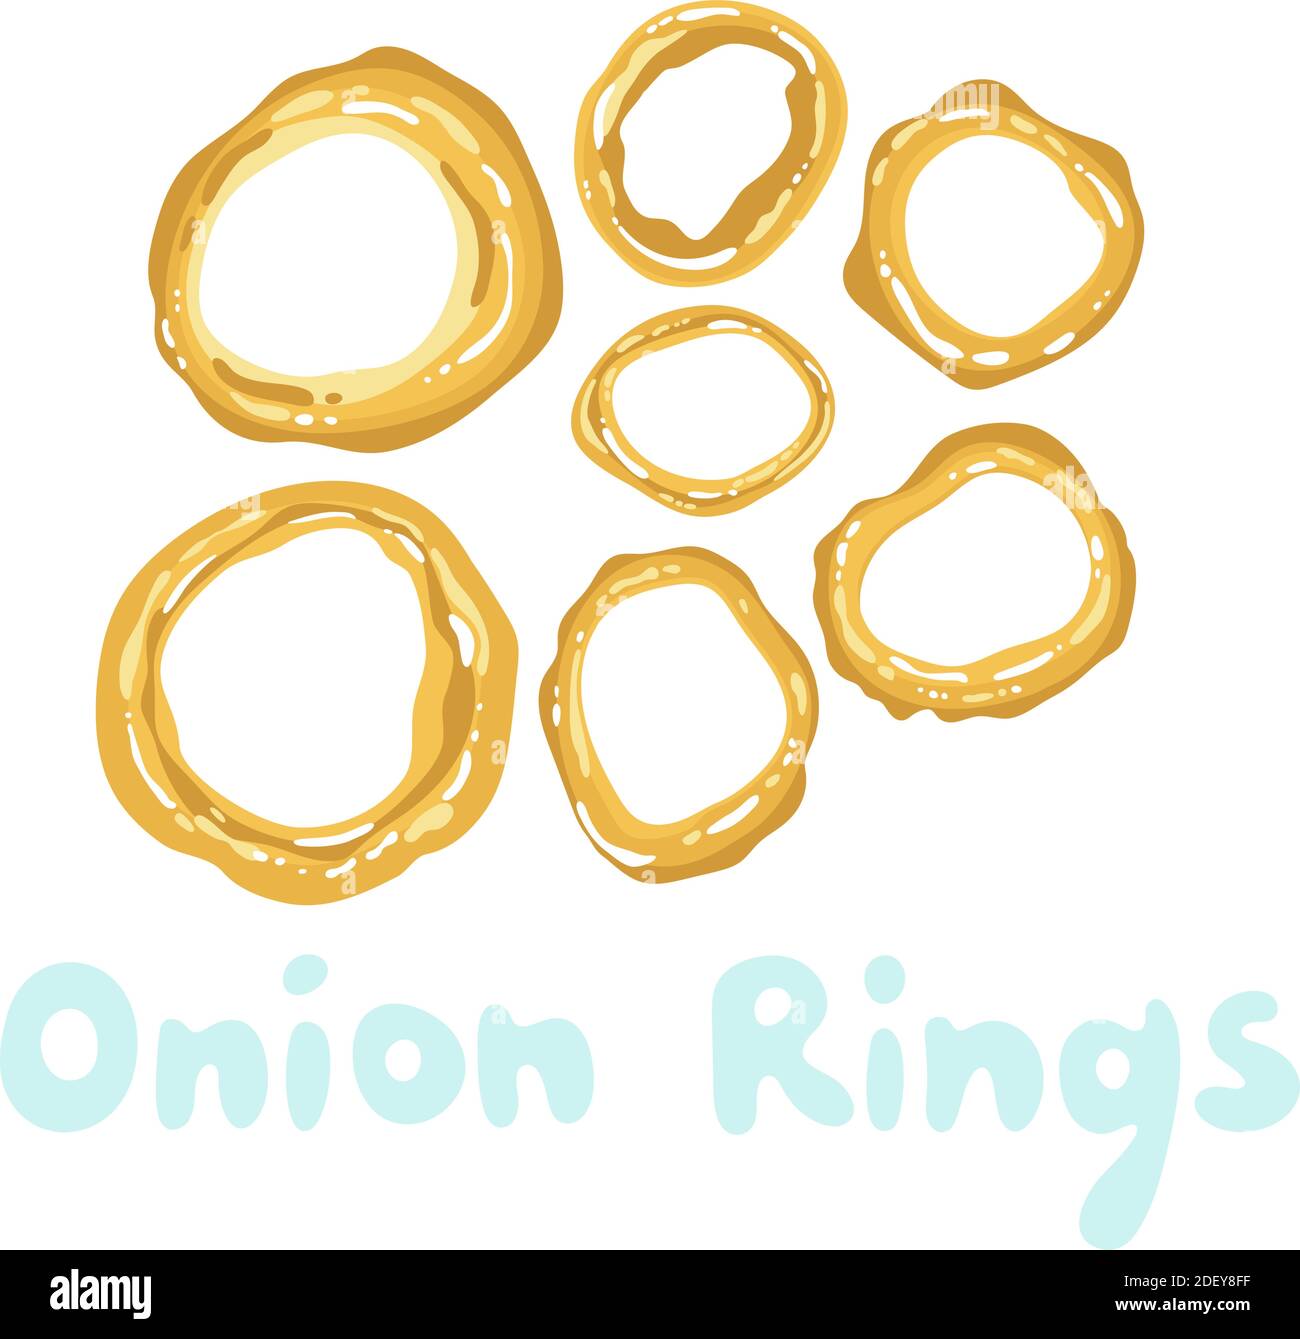 Vector illustration of onion ring - Stock Illustration [68877566] - PIXTA